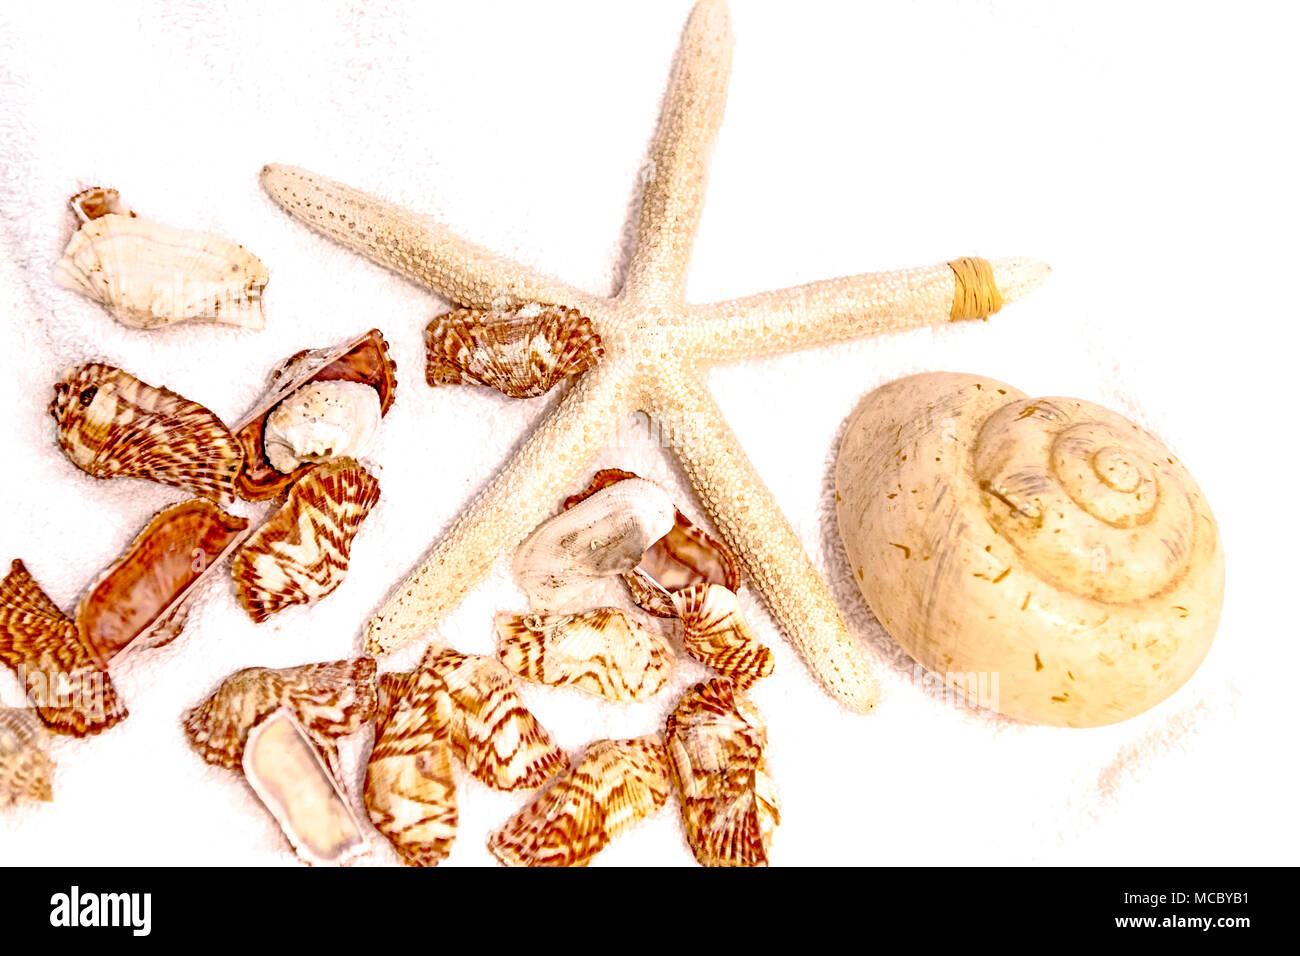 Muschelschalen und Seestern, berberechos y starfish Foto de stock